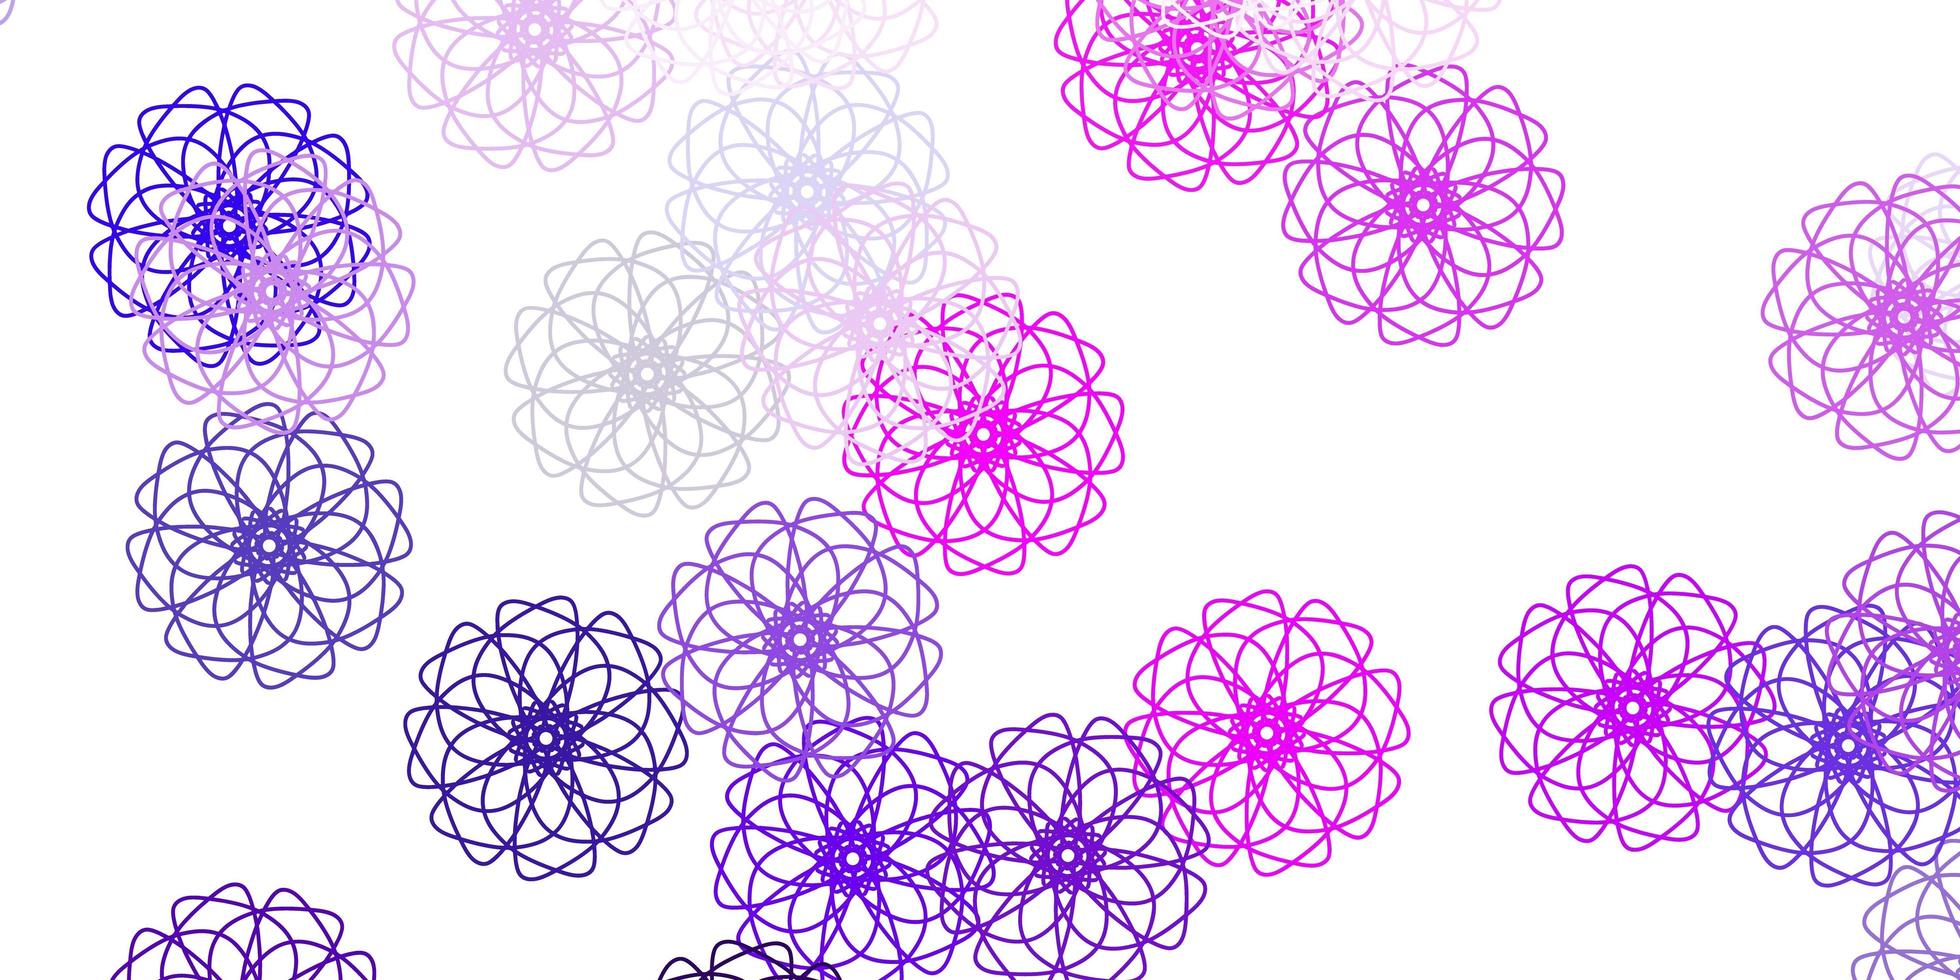 oeuvre naturelle de vecteur violet clair, rose avec des fleurs.